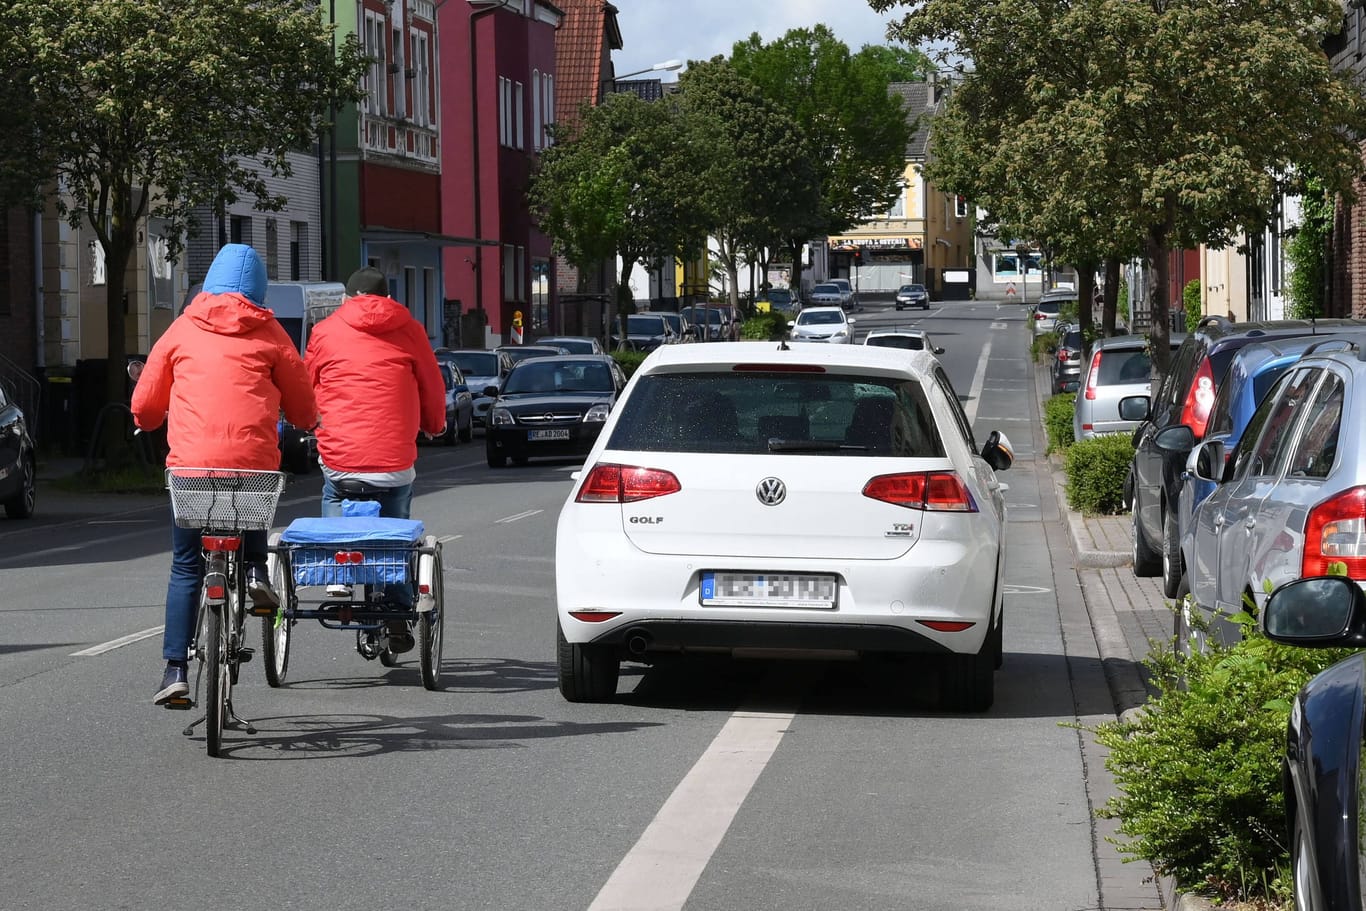 Schutzstreifen für Fahrräder: Ein Radweg ist er nicht – also was genau gilt hier?